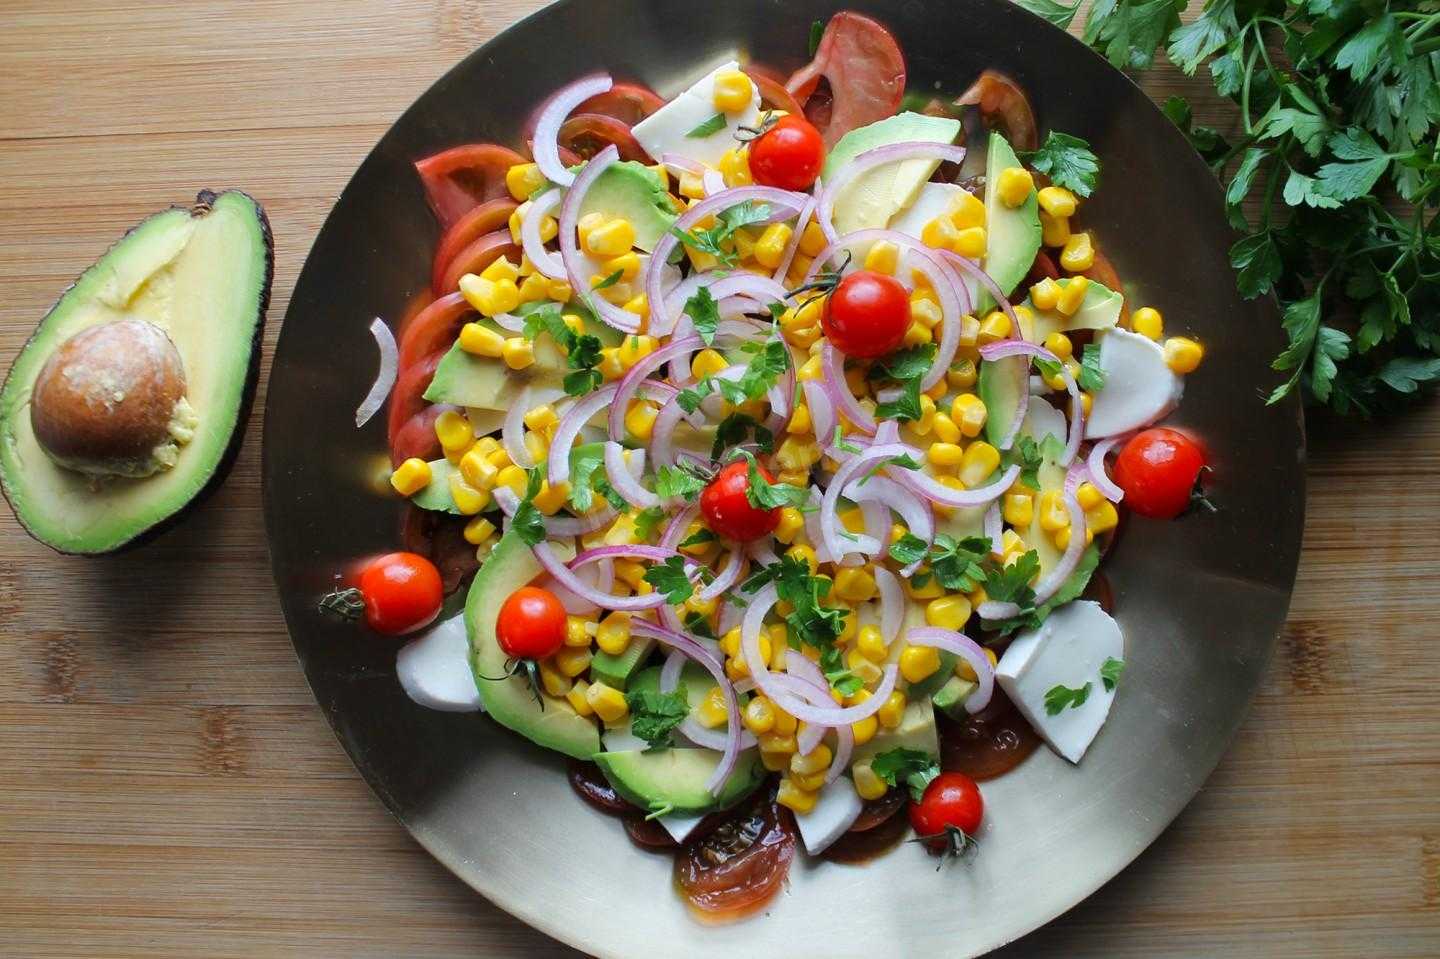 Салат с курицей и авокадо – 7 простых и вкусных рецептов